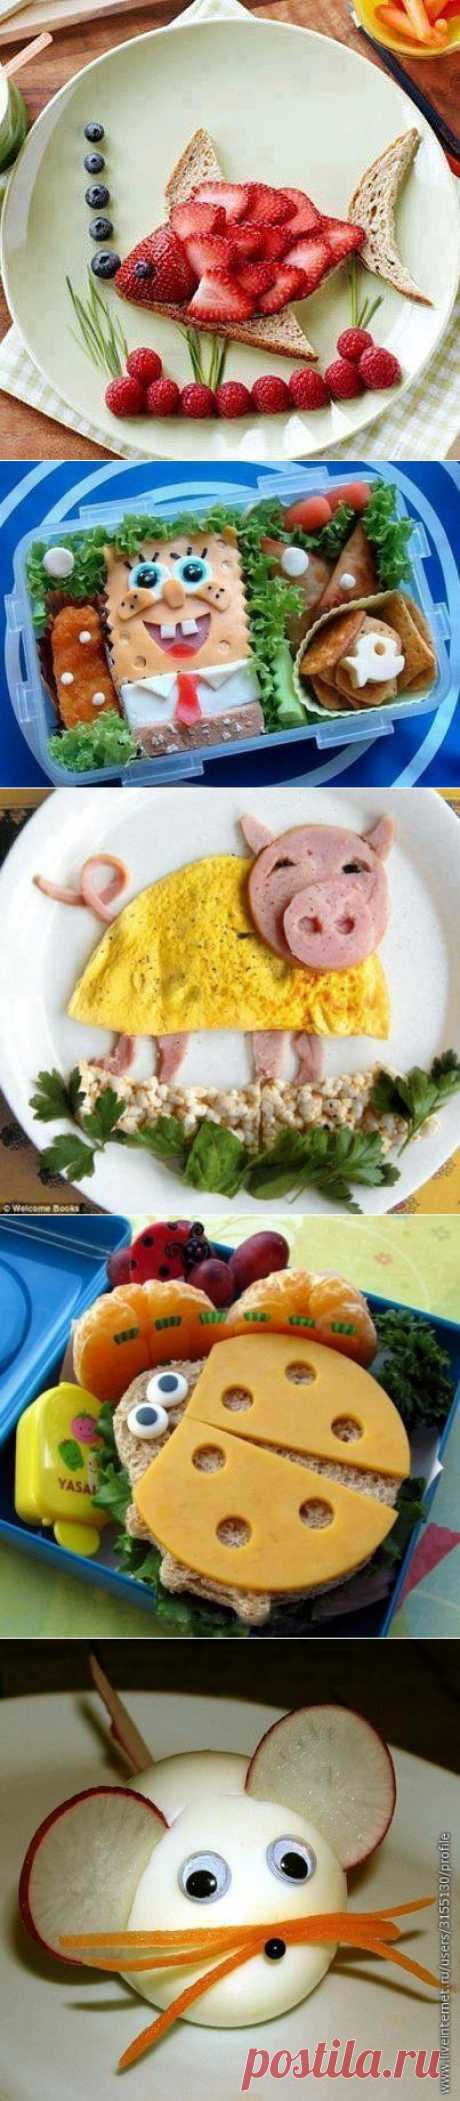 Кулинарные идеи: веселый завтрак для детей. Пробуем повторить!